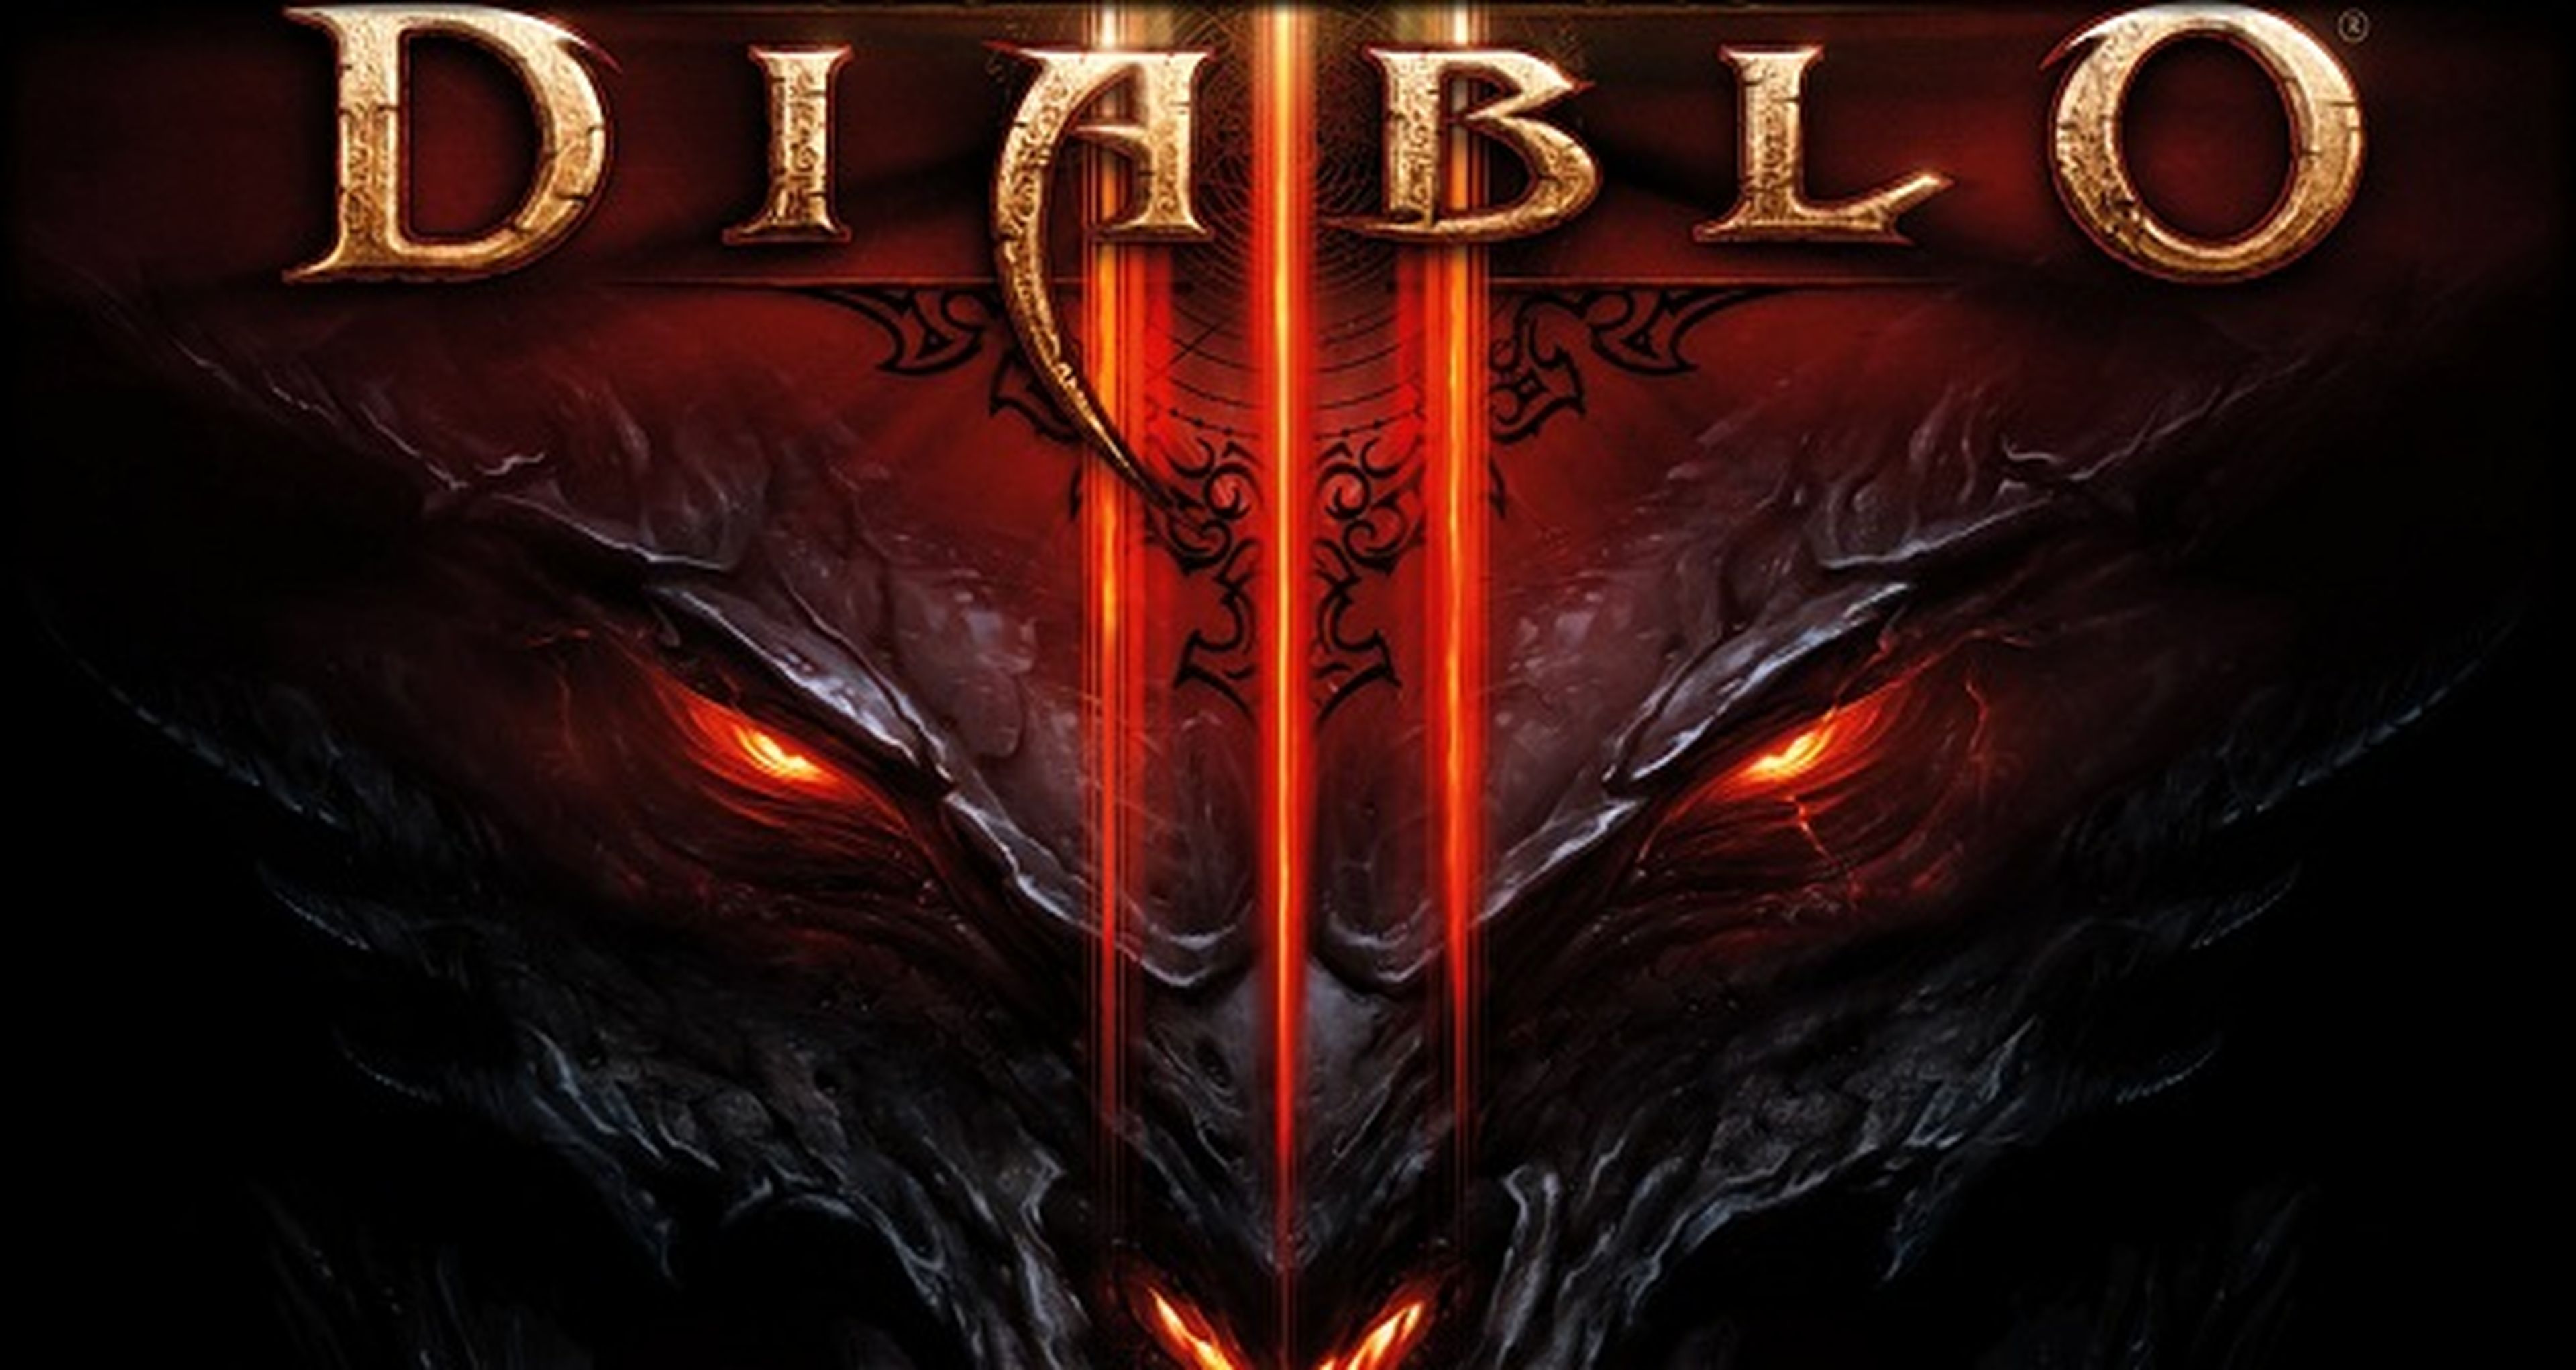 Gana un 50% extra de experiencia en Diablo III